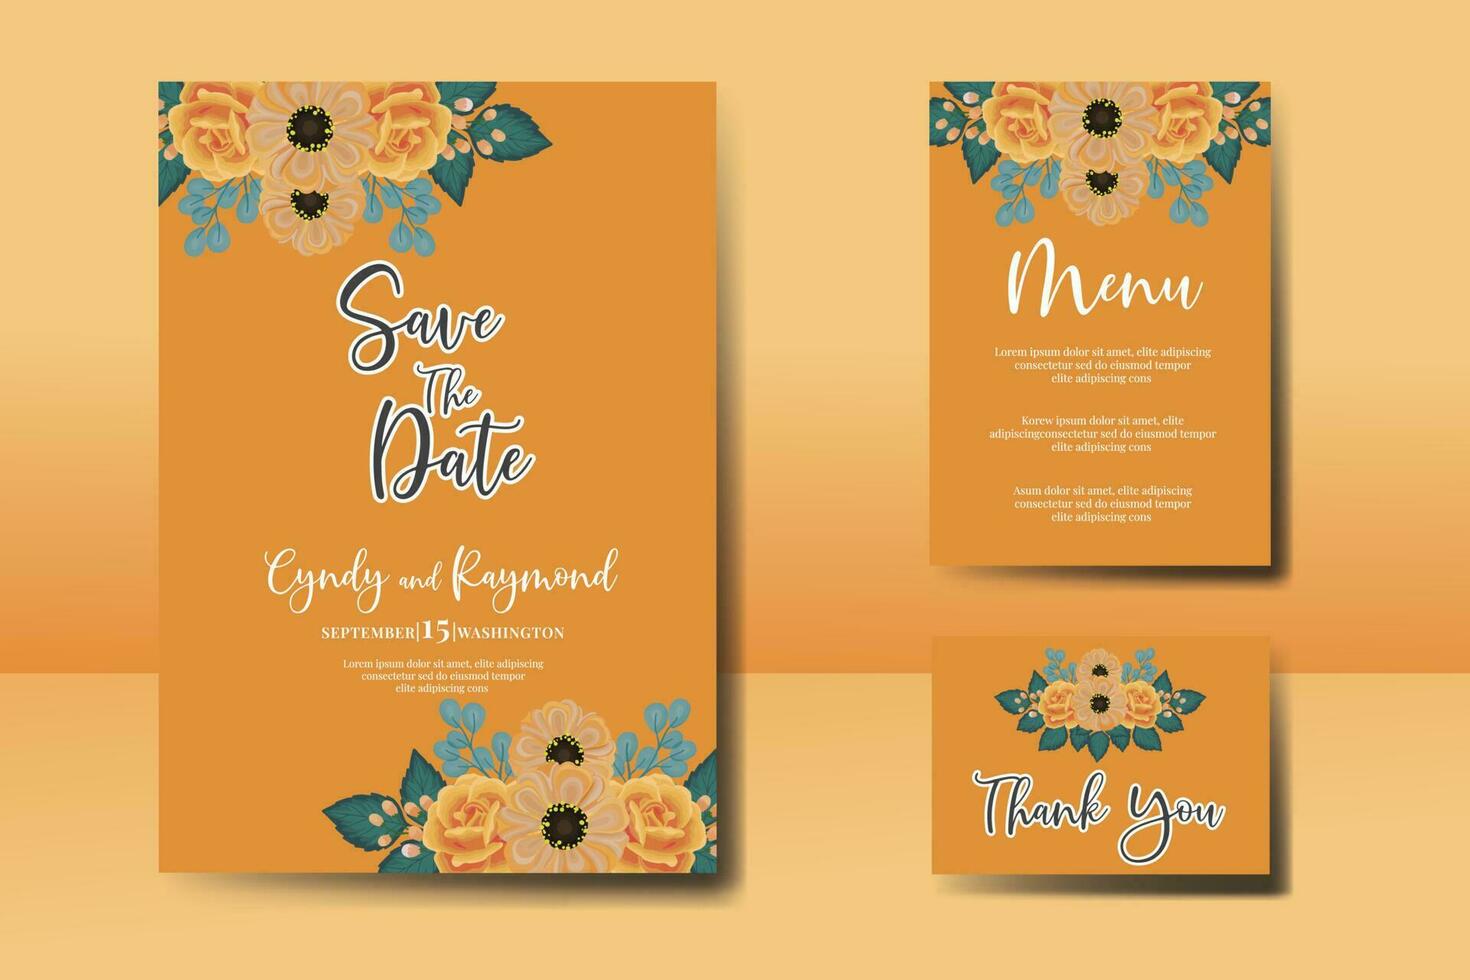 Boda invitación marco colocar, floral acuarela digital mano dibujado naranja Rosa y anémona flor diseño invitación tarjeta modelo vector